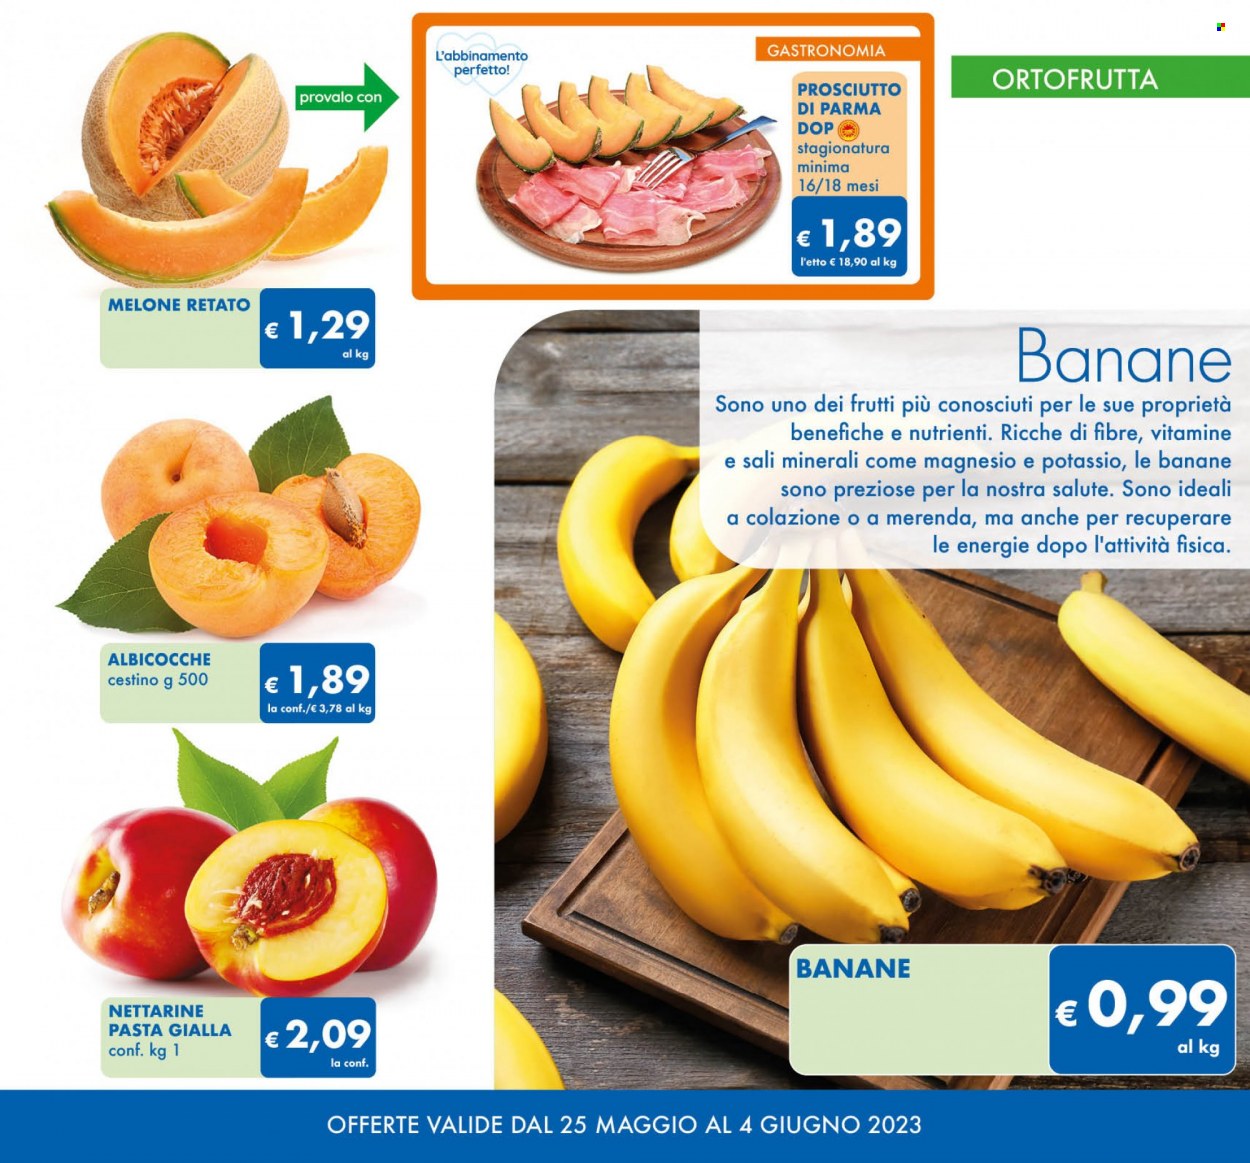 thumbnail - Volantino MD Discount - 25/5/2023 - 4/6/2023 - Prodotti in offerta - banane, albicocche, melone, nettarine, melone retato, prosciutto, Prosciutto di Parma, Magnesio. Pagina 3.